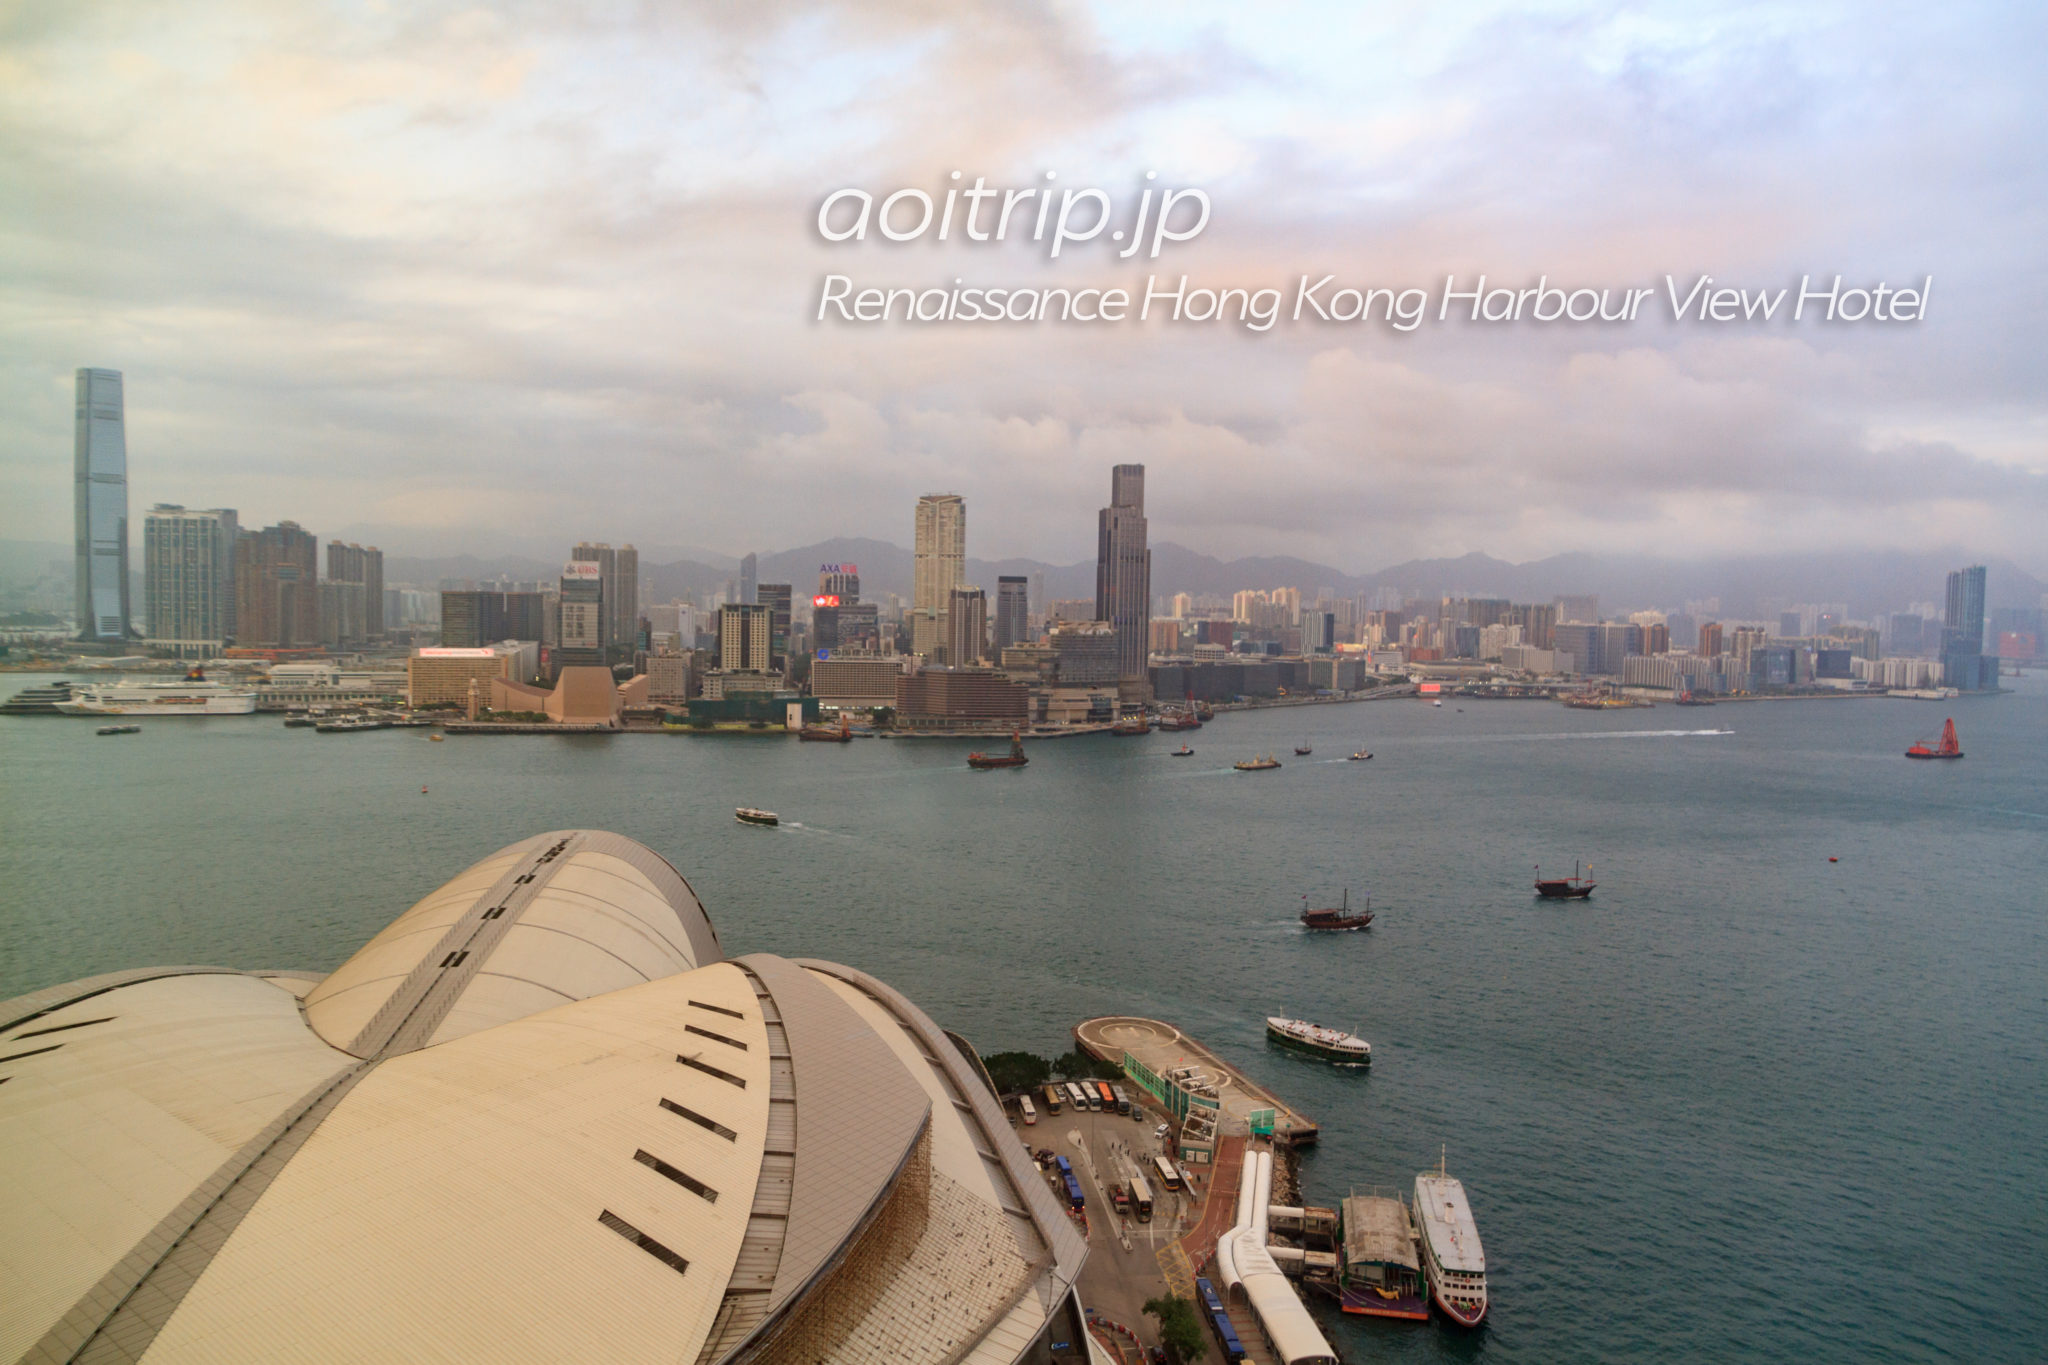 ルネッサンス香港ハーバービューホテルのハーバービュールームの眺望